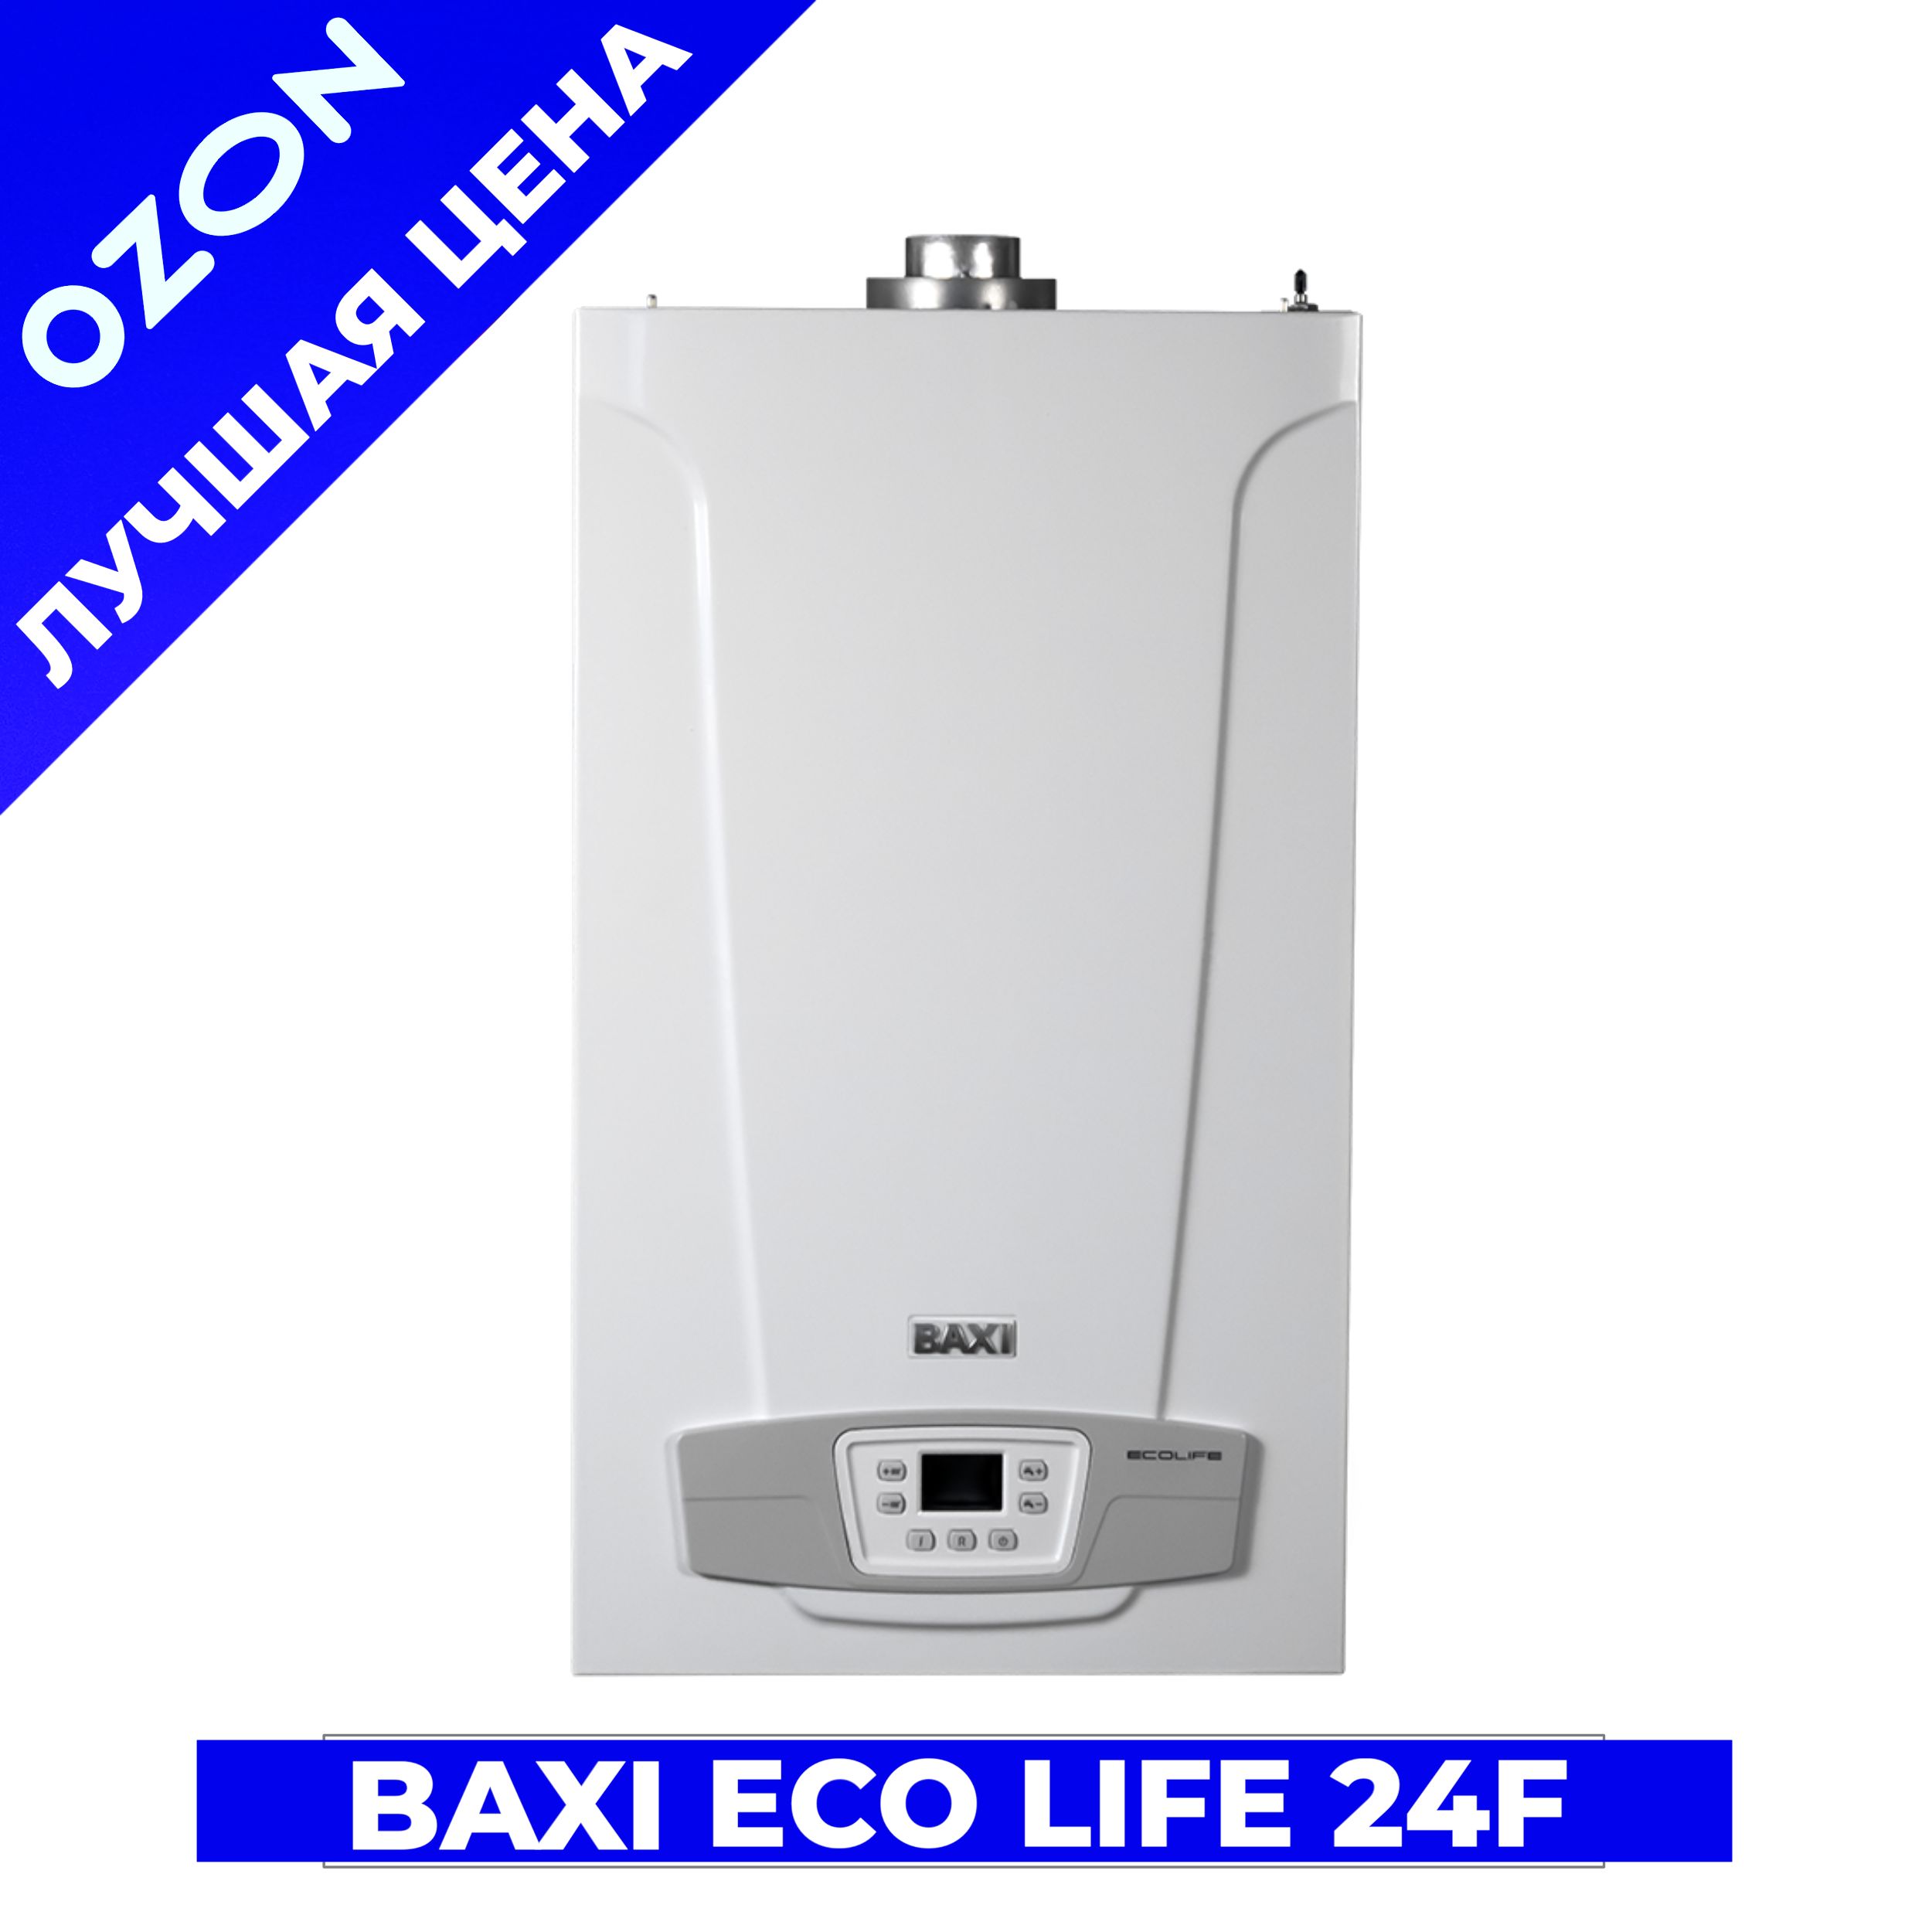 Baxi eco life отзывы. Baxi Eco Life 1.24f. Baxi Eco Life 24f. Baxi Eco Life 1.31 f (31 КВТ). Baxi Eco Life 24f котел газовый настенный.